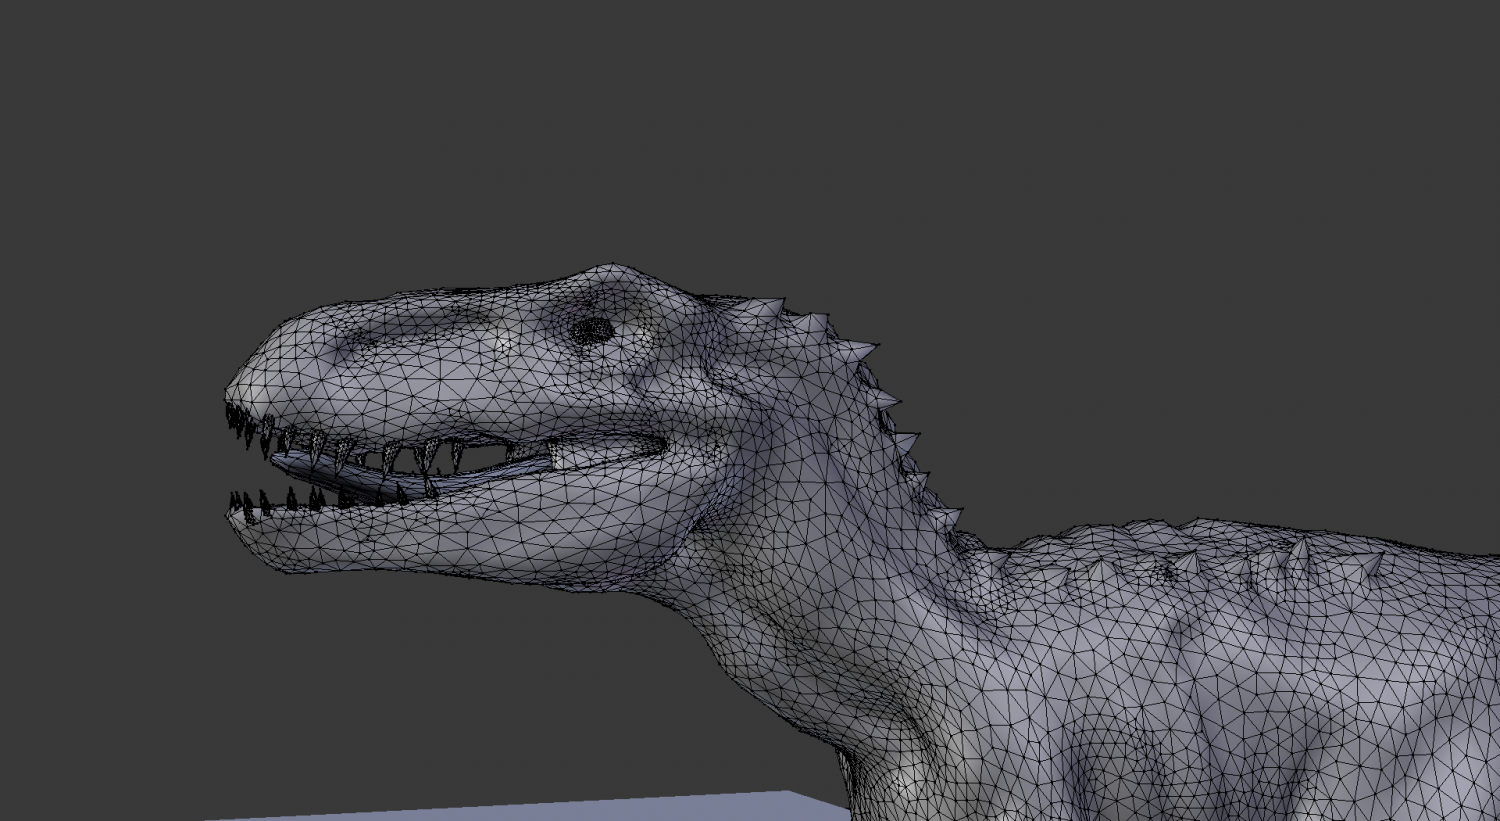 Jurassic World Fallen Kingdom T-REX 3D Display